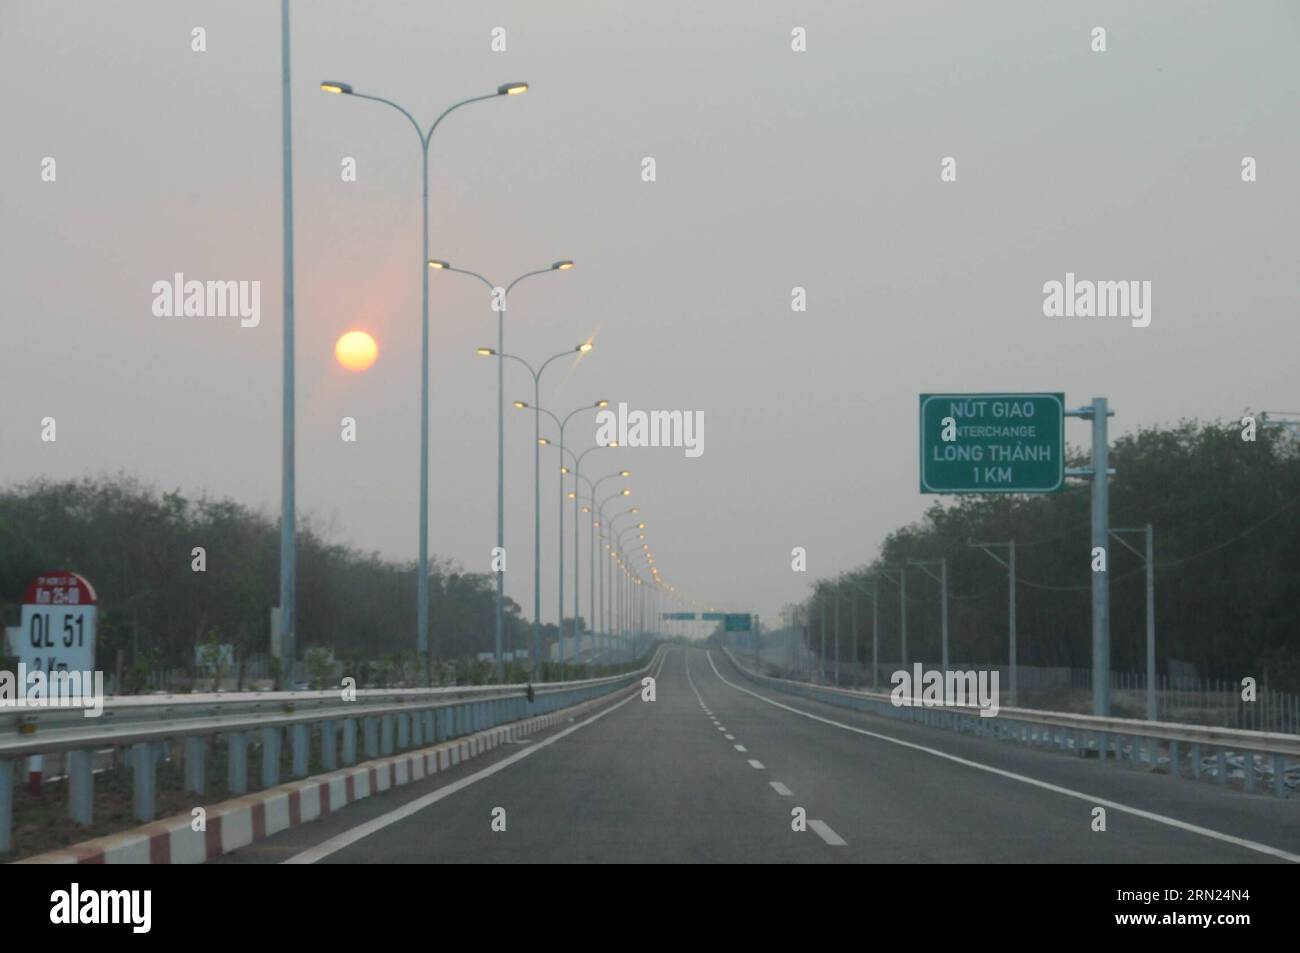 (150208) -- HO CHI MINH CITY, 8. Februar 2015 -- Foto vom 7. Februar 2015 zeigt die Schnellstraße zwischen Ho Chi Minh (HCM) City-Long Thanh-Dau Giay in Südvietnam. Die gesamte 55 km lange Schnellstraße wird am 8. Februar für den Verkehr geöffnet und wird laut einer Pressemitteilung der Vietnam Expressway Company (VEC) am Samstag zur modernsten dieser Art, die bisher im Land betrieben wird. ) VIETNAM-HO CHI MINH CITY-MODERN EXPRESSWAY-OPEN HuangxSexFang PUBLICATIONxNOTxINxCHN Ho Chi Minh CITY 8. Februar 2015 Foto aufgenommen AM 7. Februar 2015 zeigt den Expressway, der Ho Chi Minh HCM City Long Thanh Dau in Süd VI verbindet Stockfoto